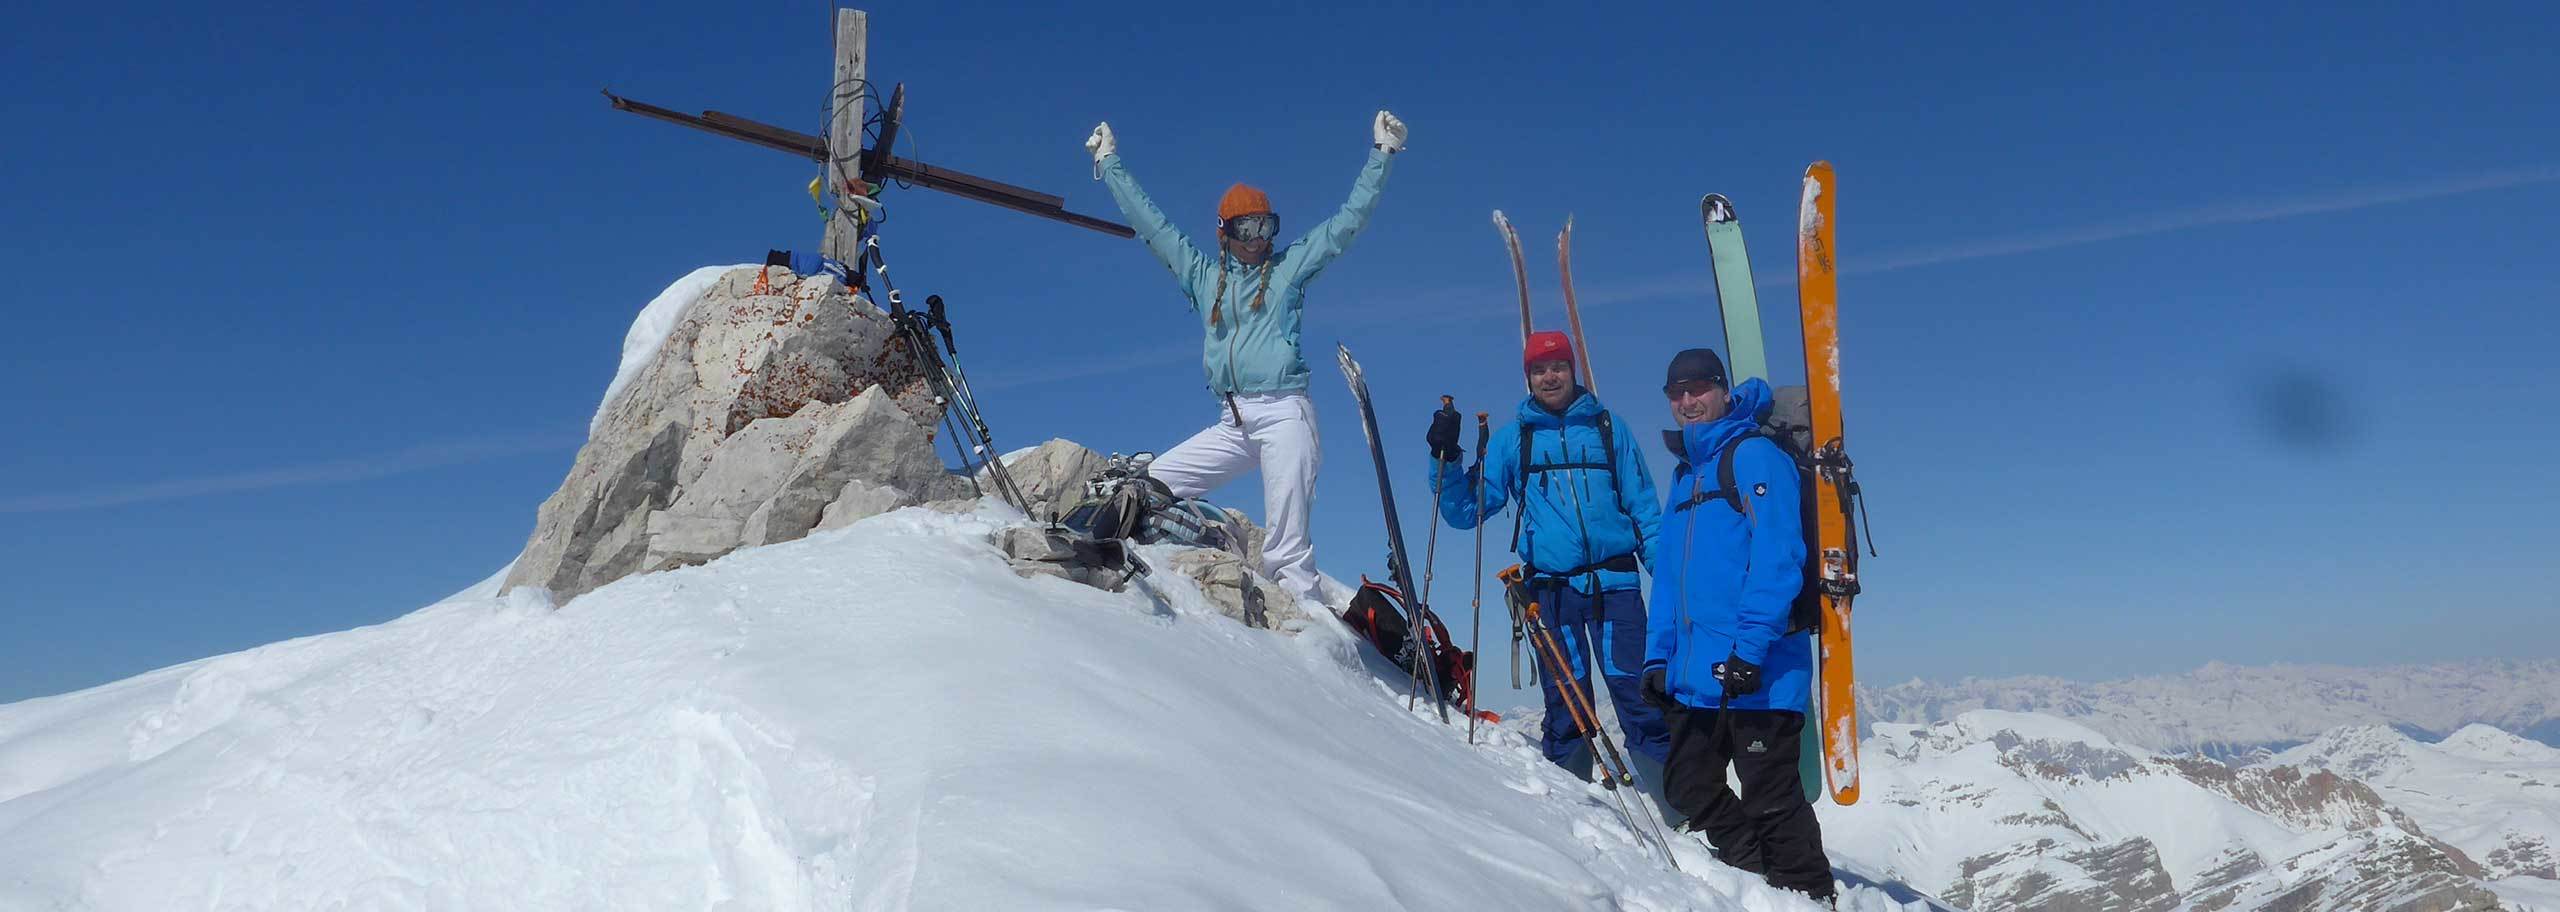 Sci Alpinismo in Dolomiti, Itinerari e Corsi Scialpinistici